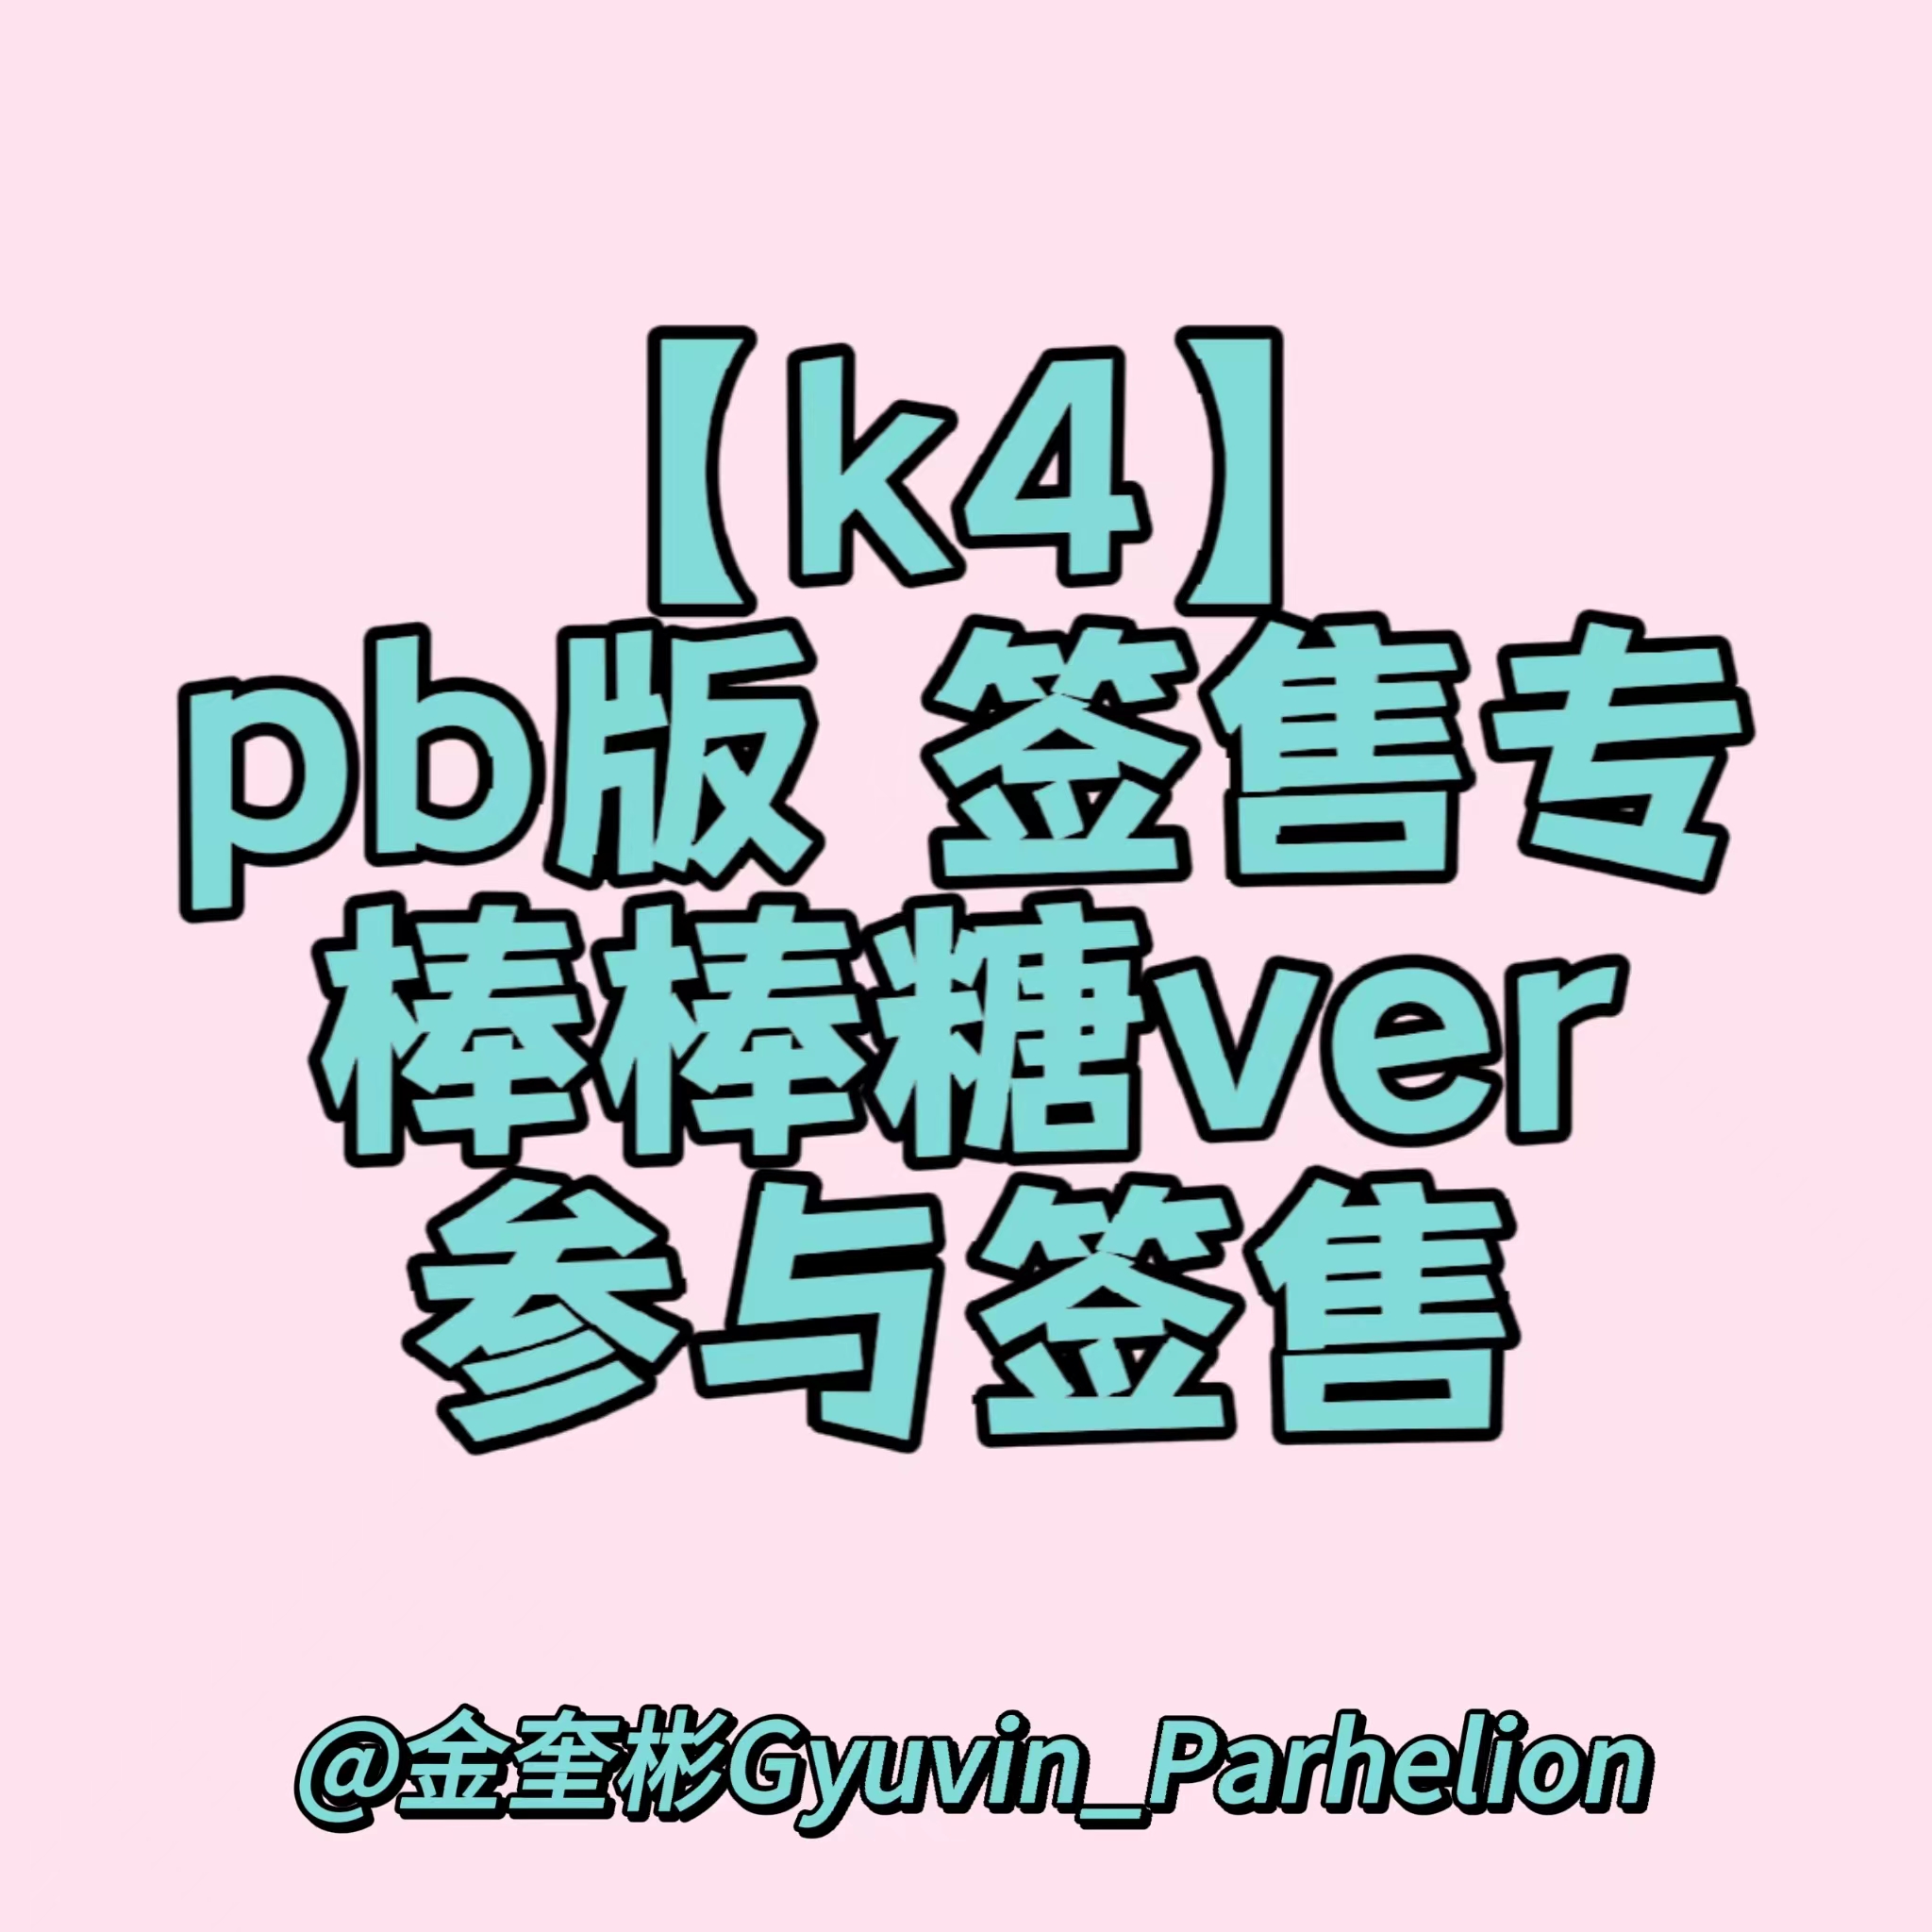 [全款 裸专] [4th] [视频签售活动] [KIM GYUVIN] ZEROBASEONE - The 2nd Mini Album [MELTING POINT] (Random Ver.) _金奎彬Gyuvin_Parhelion